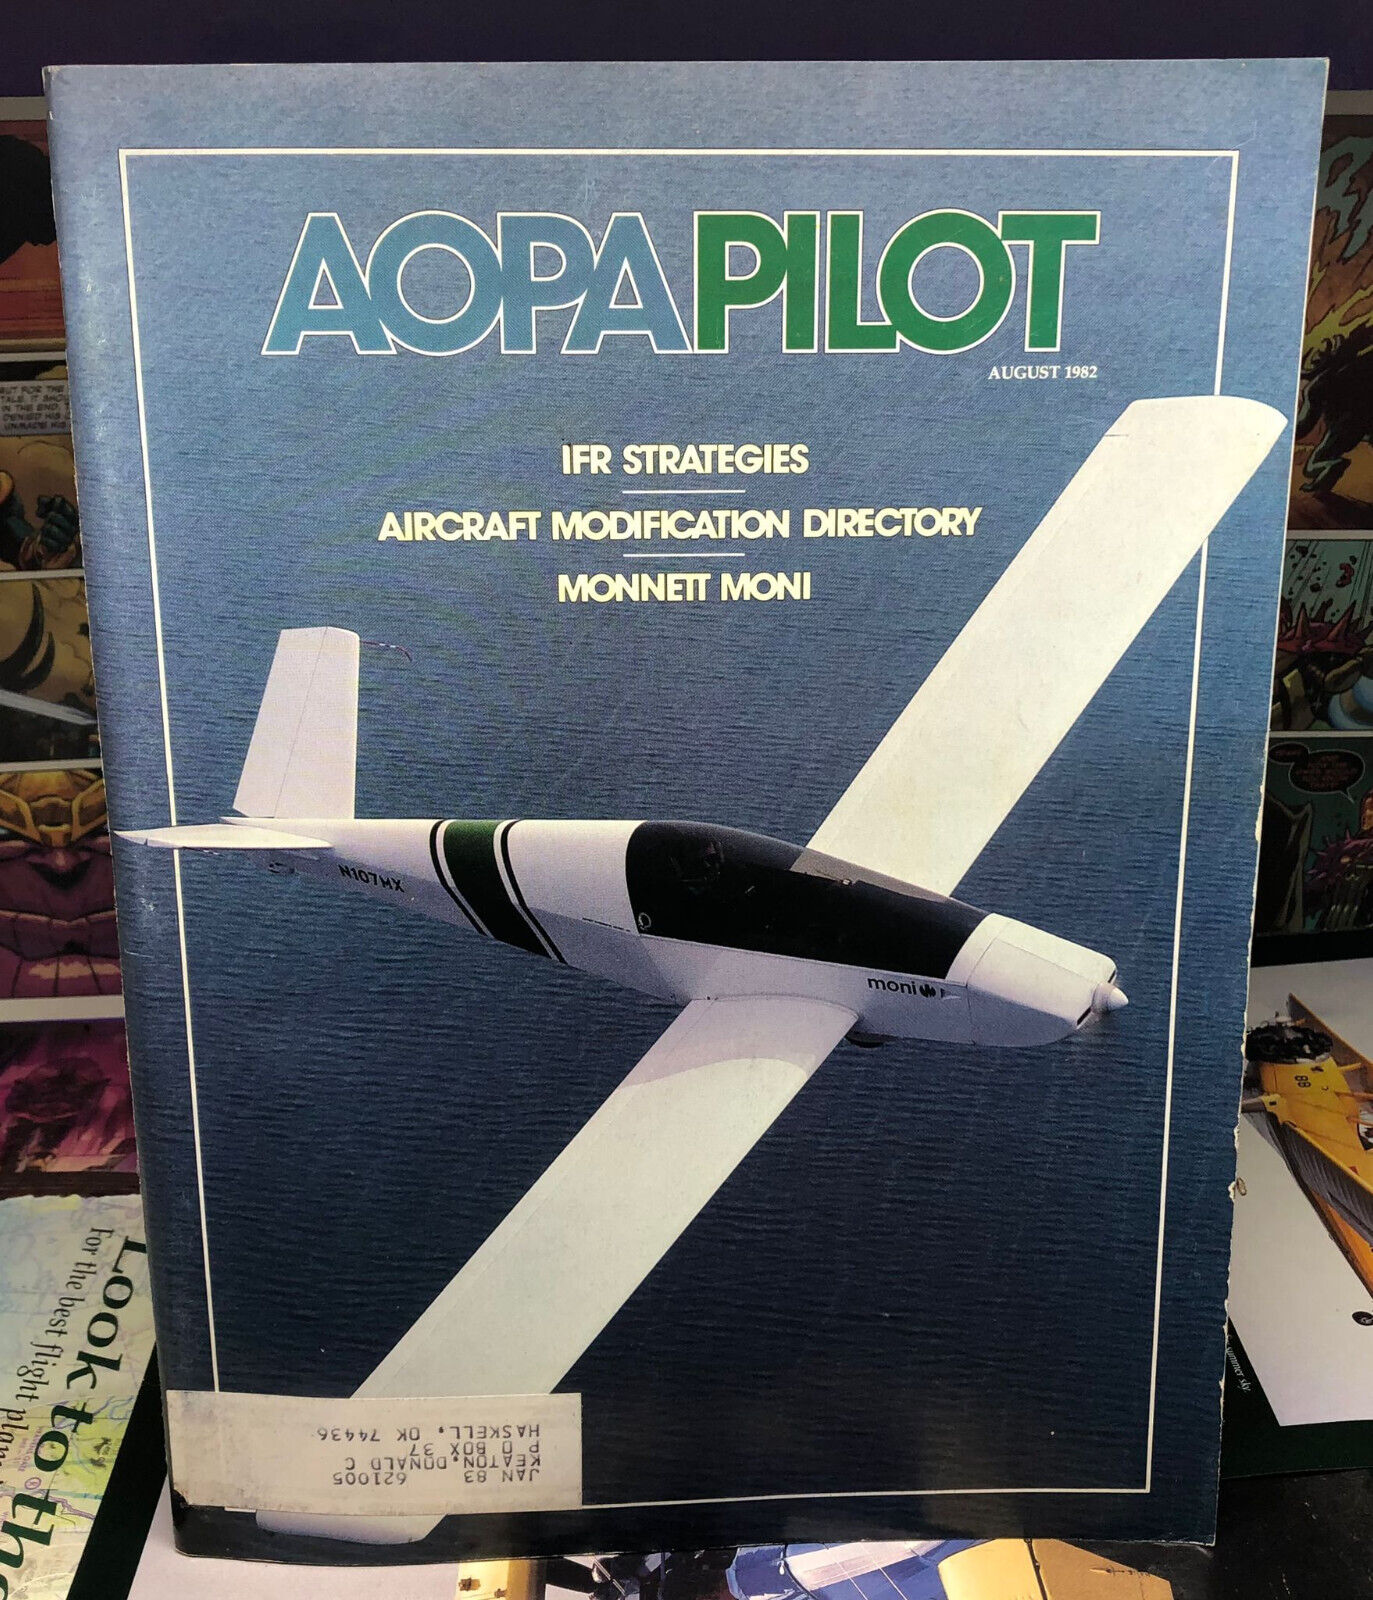 Aopa Pilot Magazine - August 1982, IFR Strategies, Craft Modification, Monnett